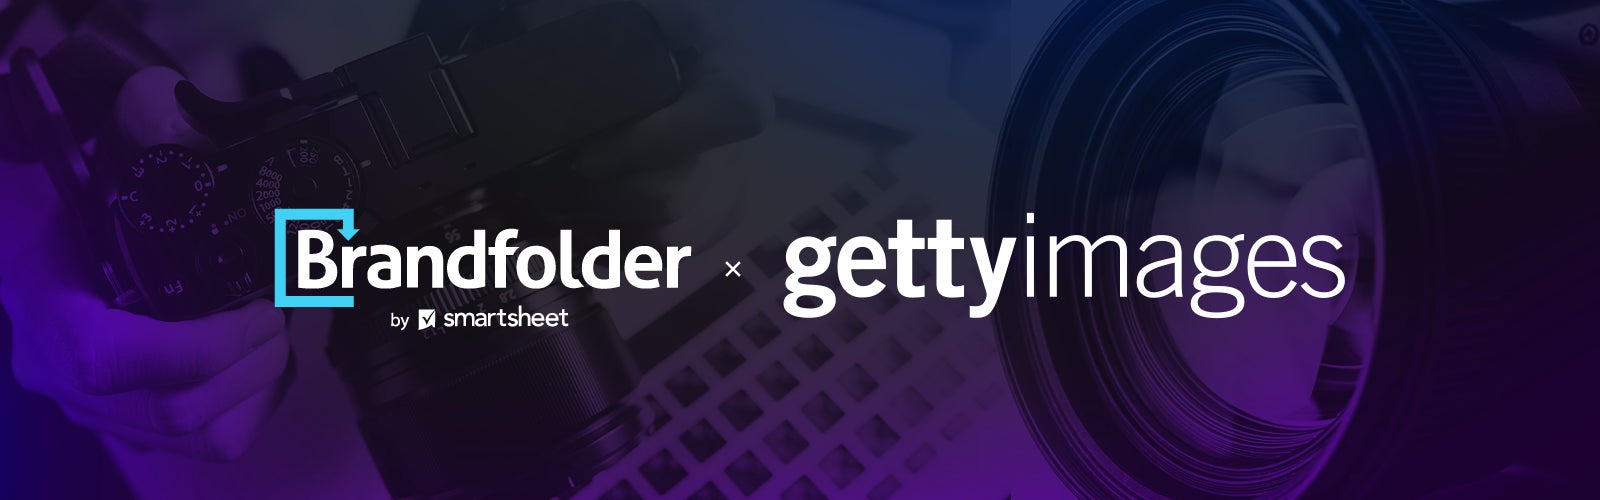 Getty Brandfolder logos